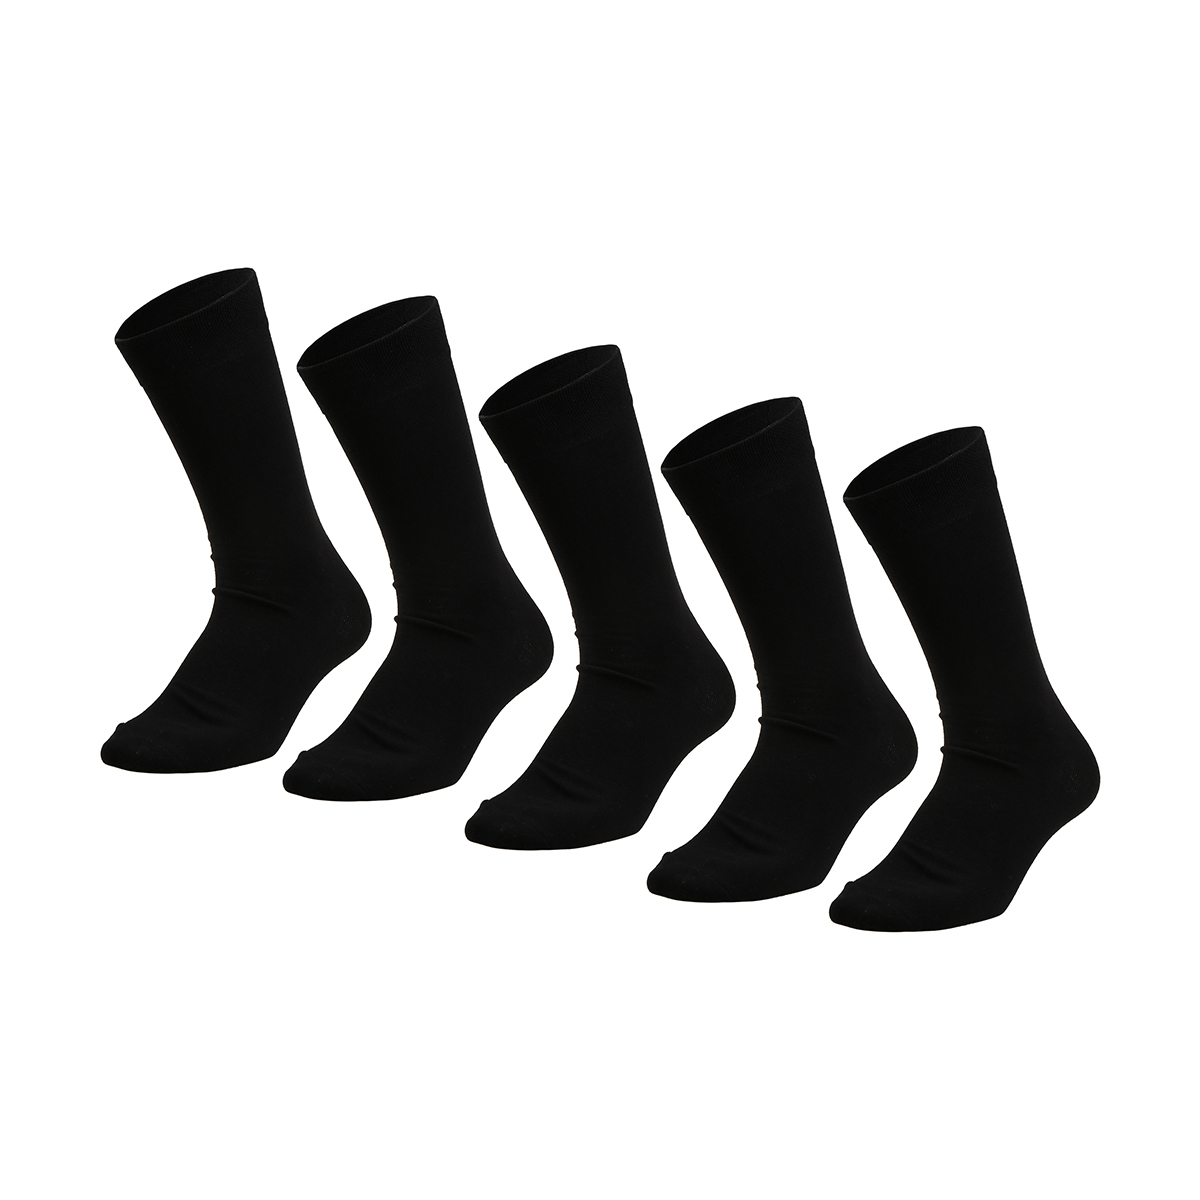 5 Pack Business Socks | Kmart